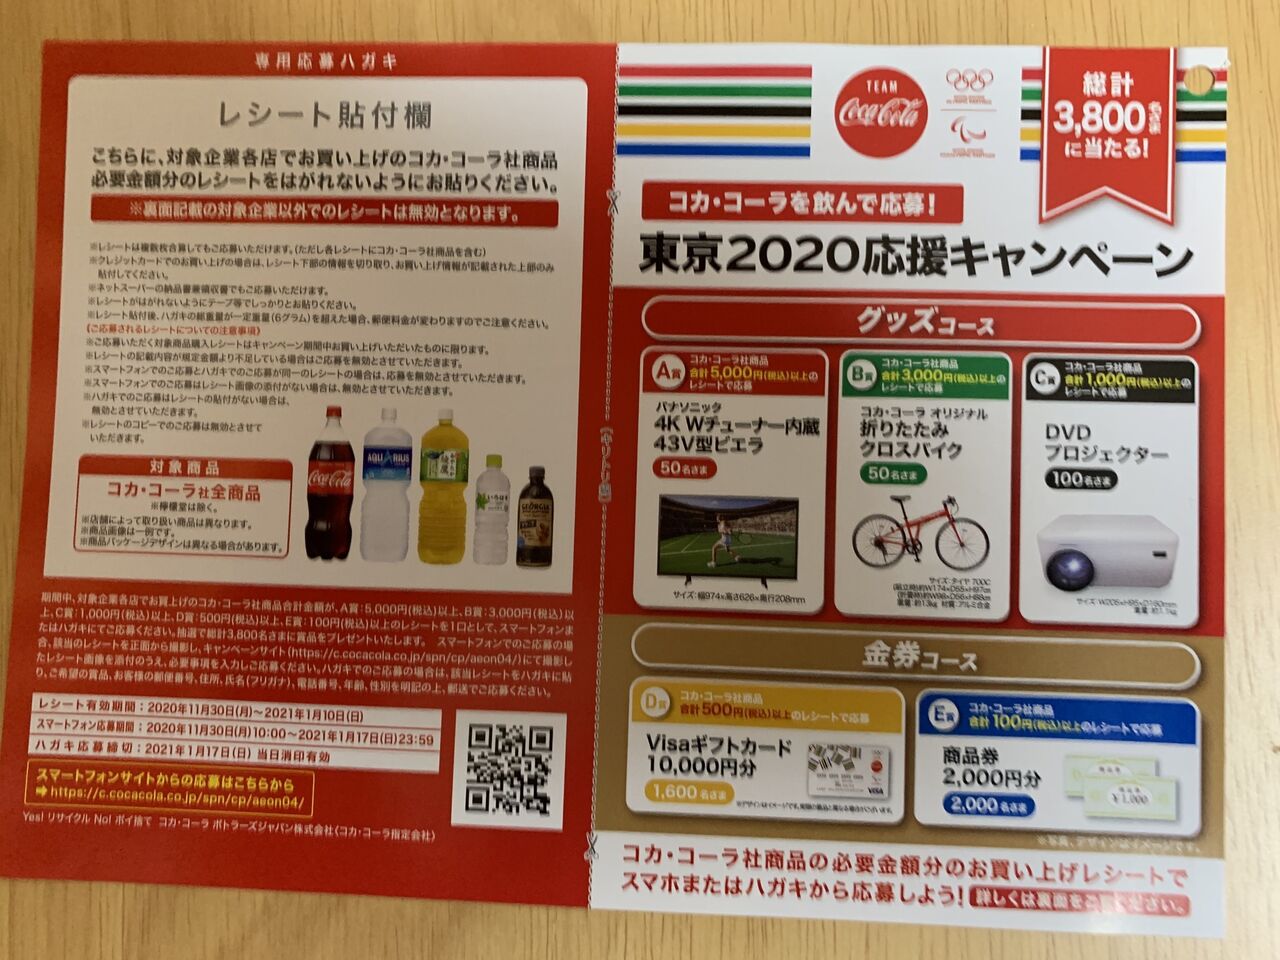 クローズド イオングループ コカ コーラを飲んで応募 東京応援キャンペーン 21 1 10 みーばんの懸賞ハマってますブログ